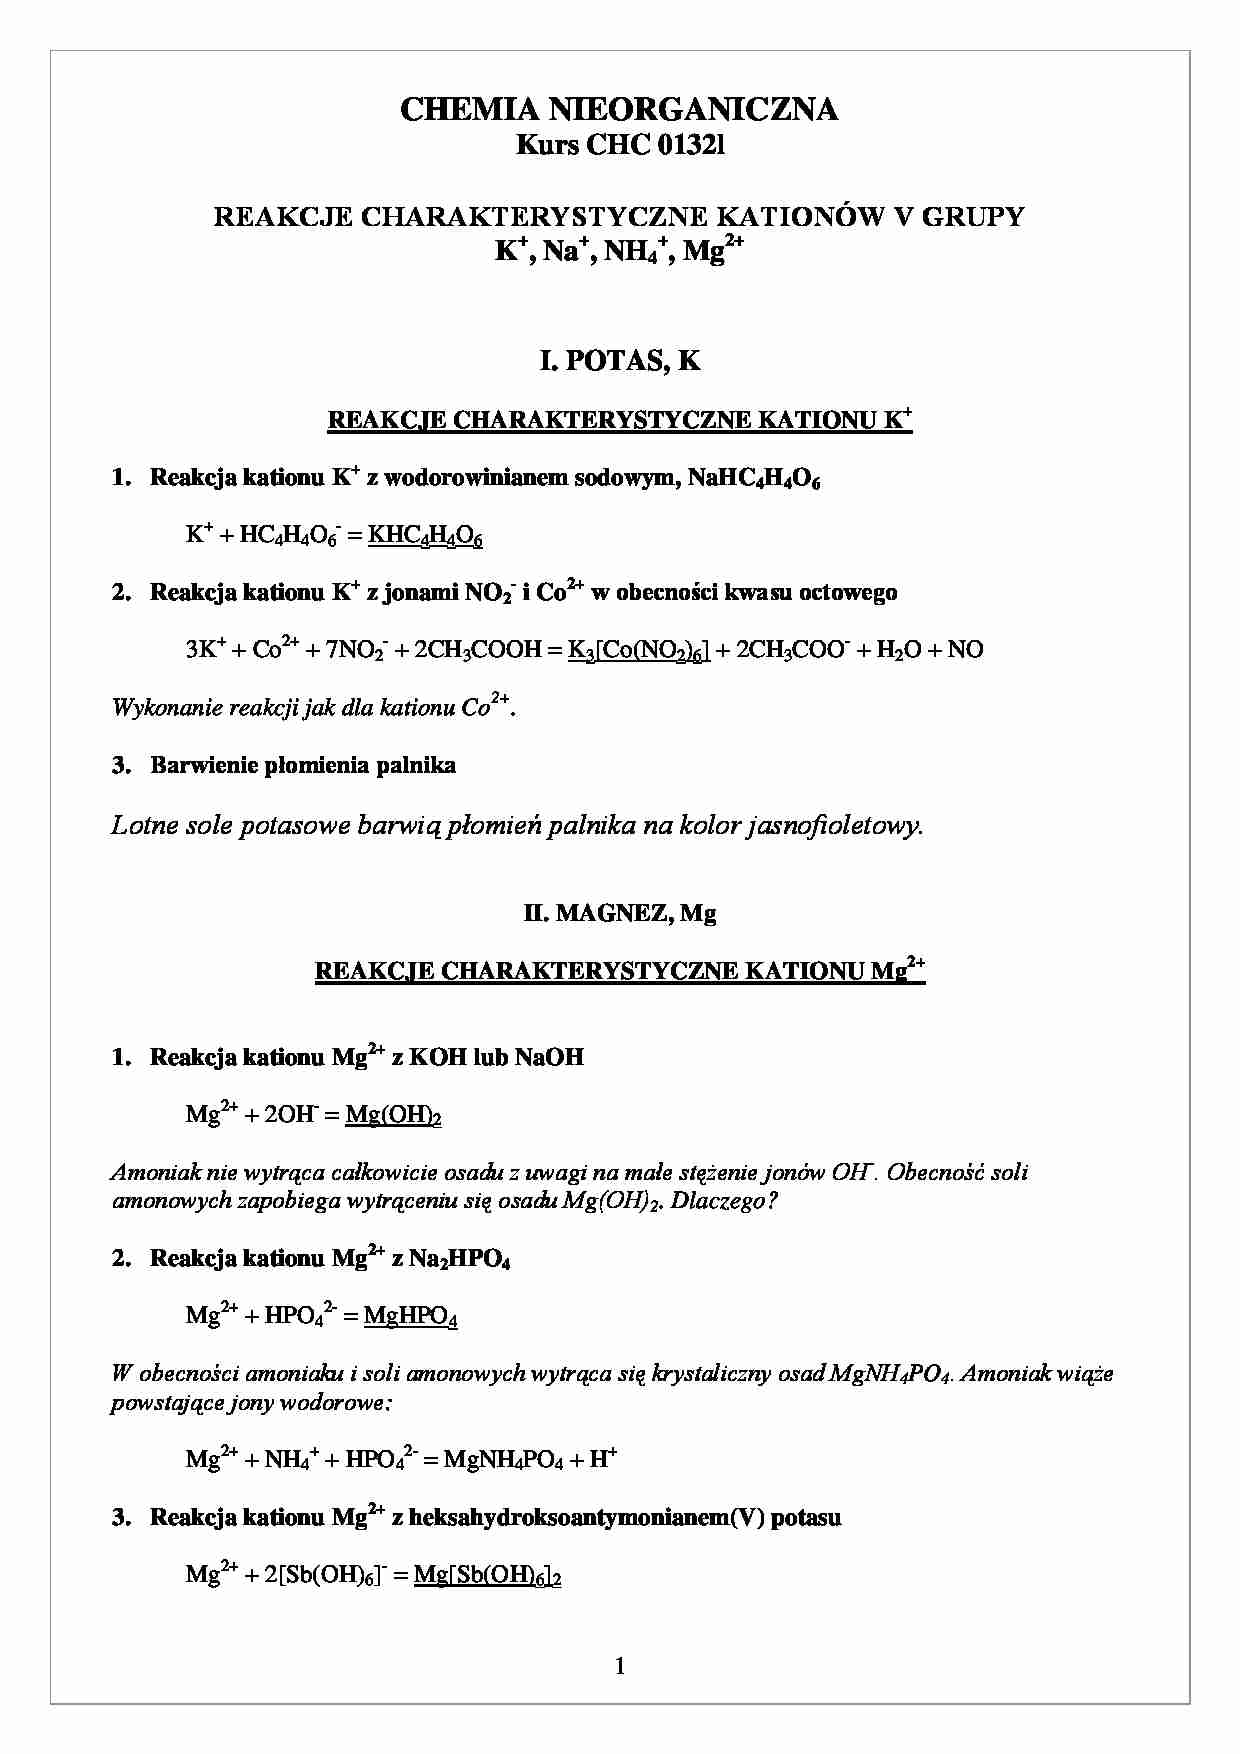 chemia nieorganiczna - reakcje  charakterystyczne kationów 5   - strona 1